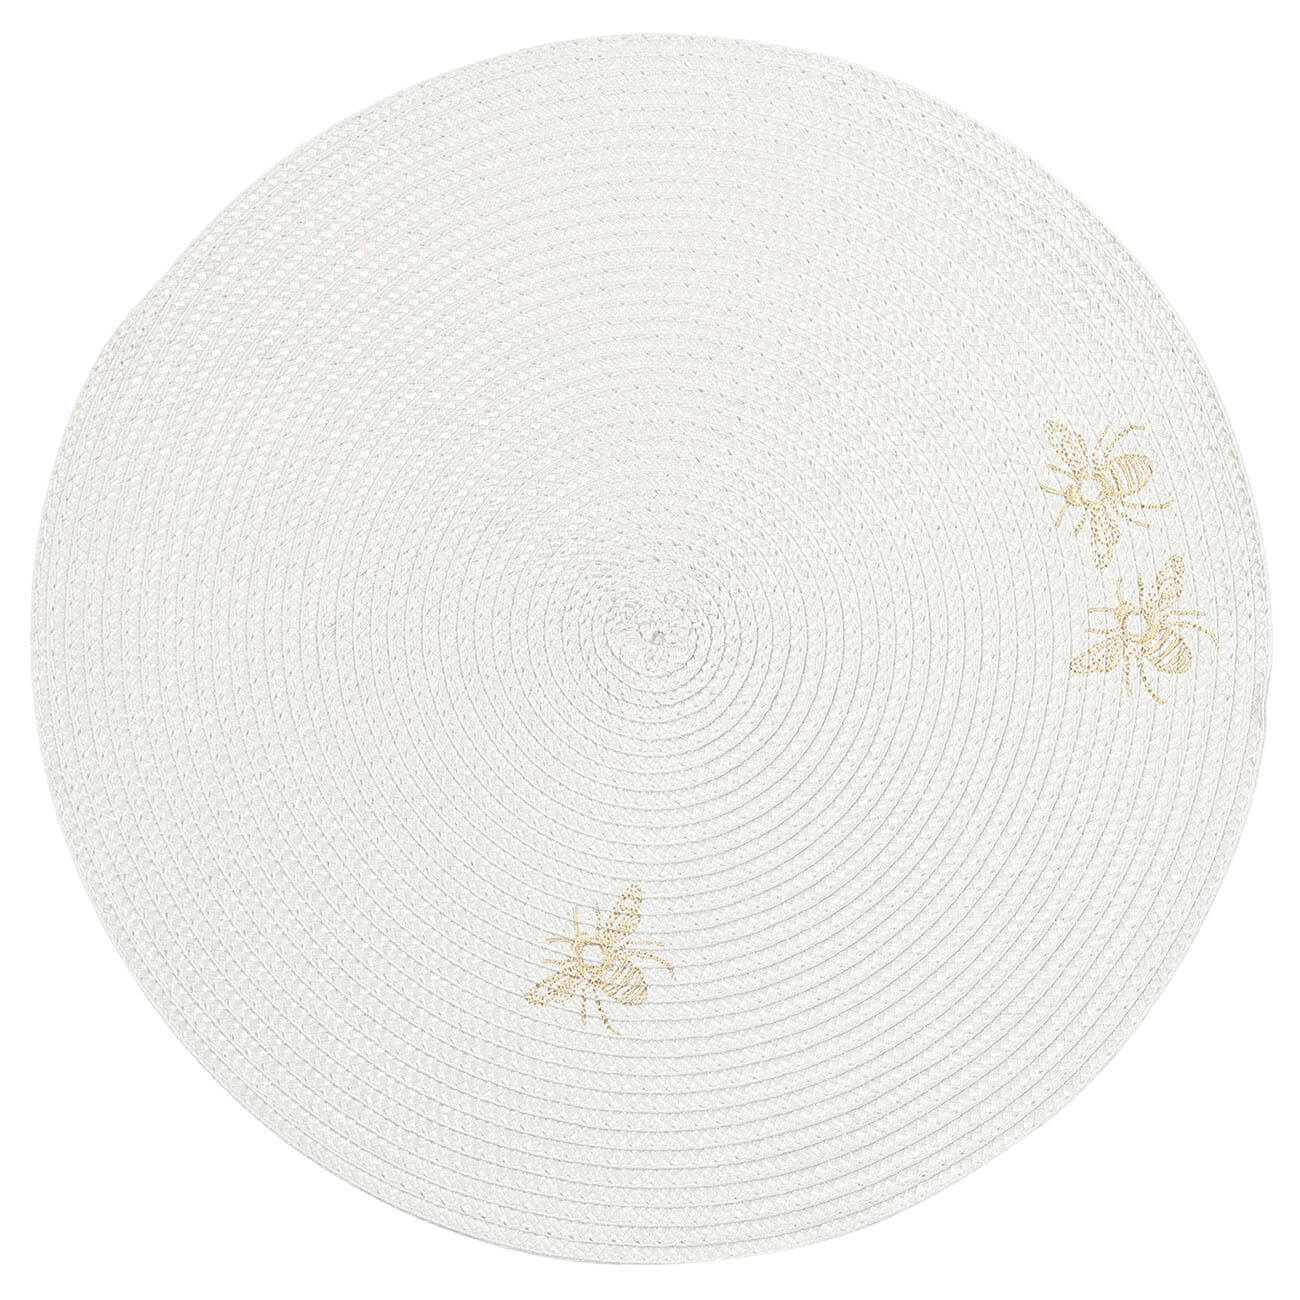 Салфетка под приборы, 38 см, полипропилен/ПЭТ, круглая, светло-серая, Пчелы, Circle embroidery салфетка для кухни ladina